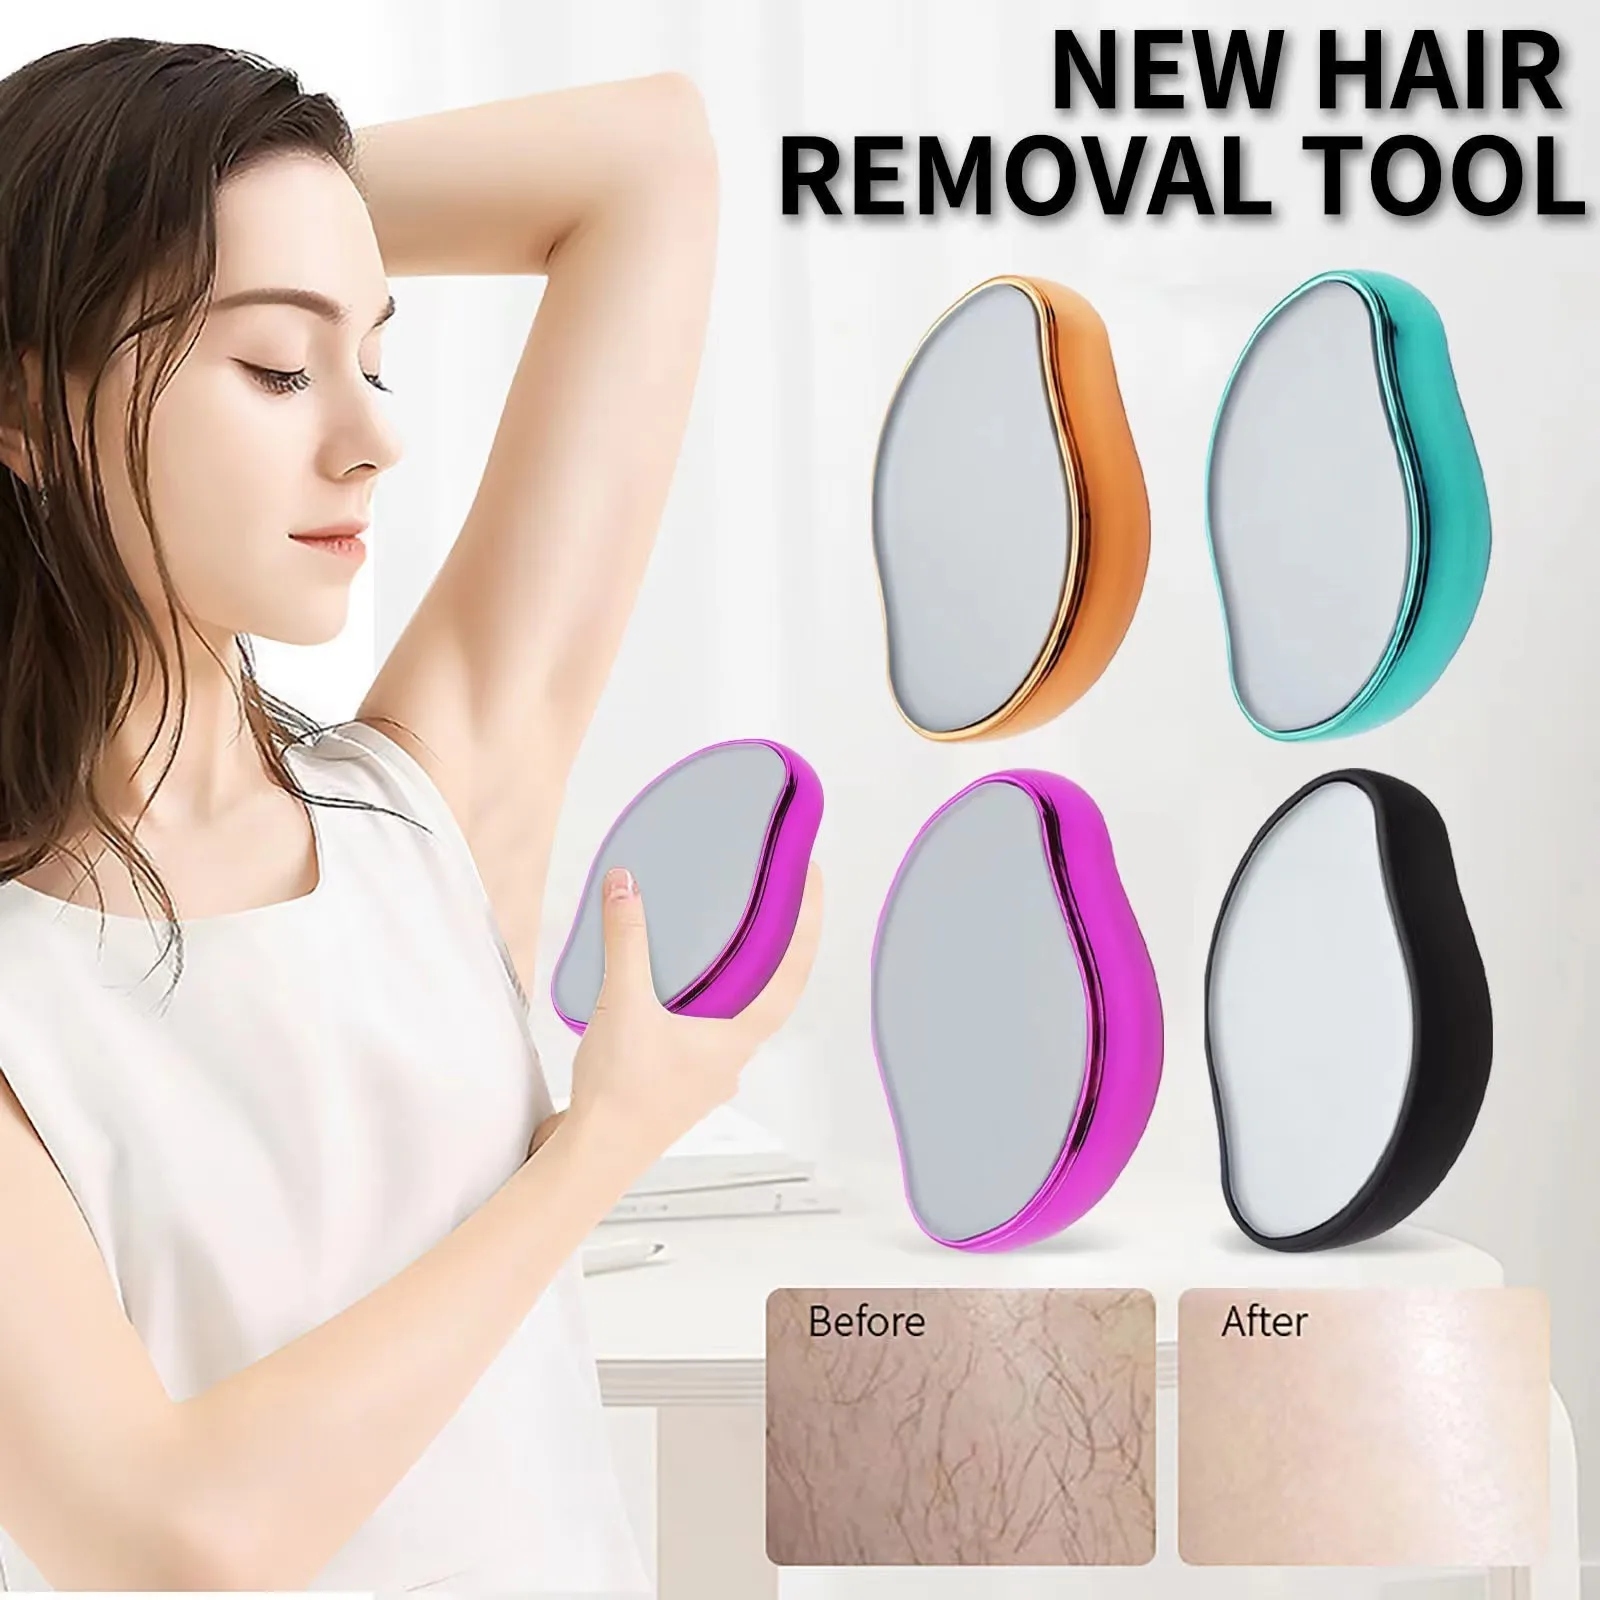 Tanie Fizyczne bezbolesne włosów Remover profesjonalny kryształ depilator instrukcja bezpieczne narzędzie sklep